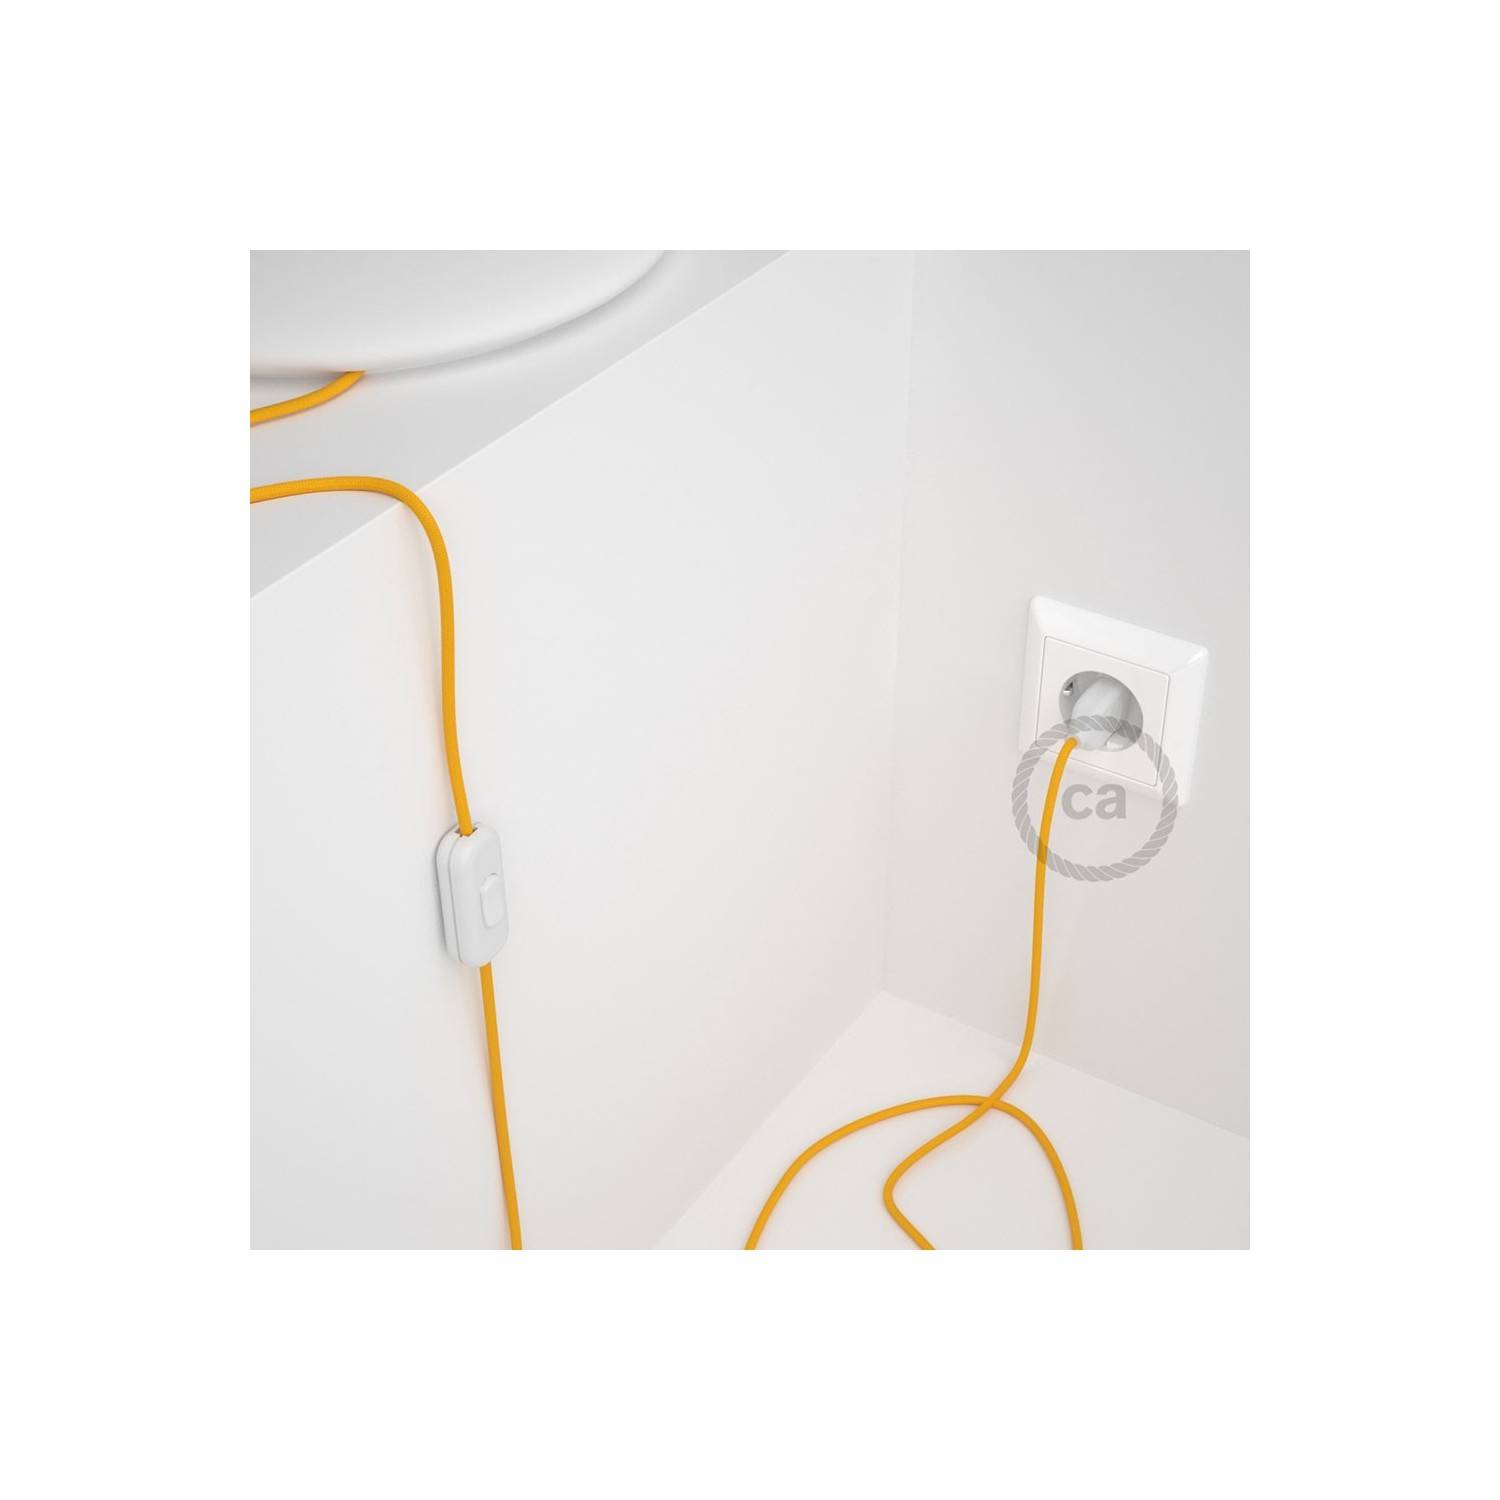 Cableado para lámpara, cable RM10 Efecto Seda Amarillo 1,8m. Elige tu el color de la clavija y del interruptor!